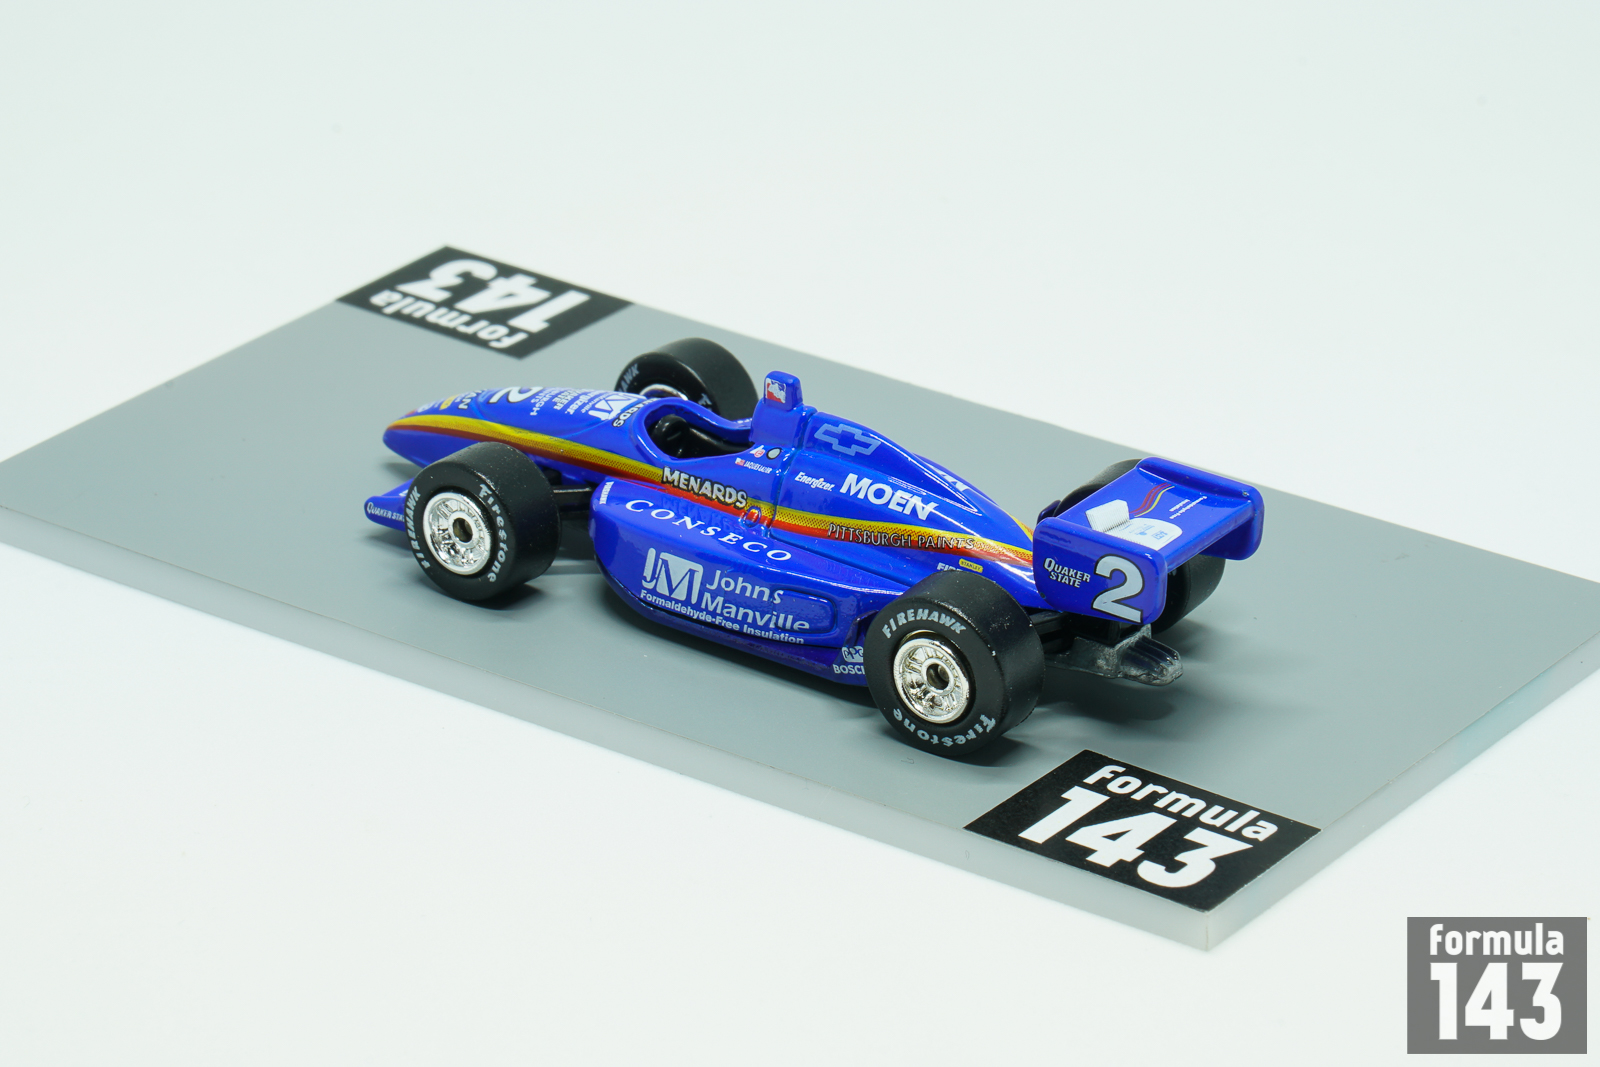 2002 Dallara IR-02 – Chevrolet Jaques Lazier – formula143